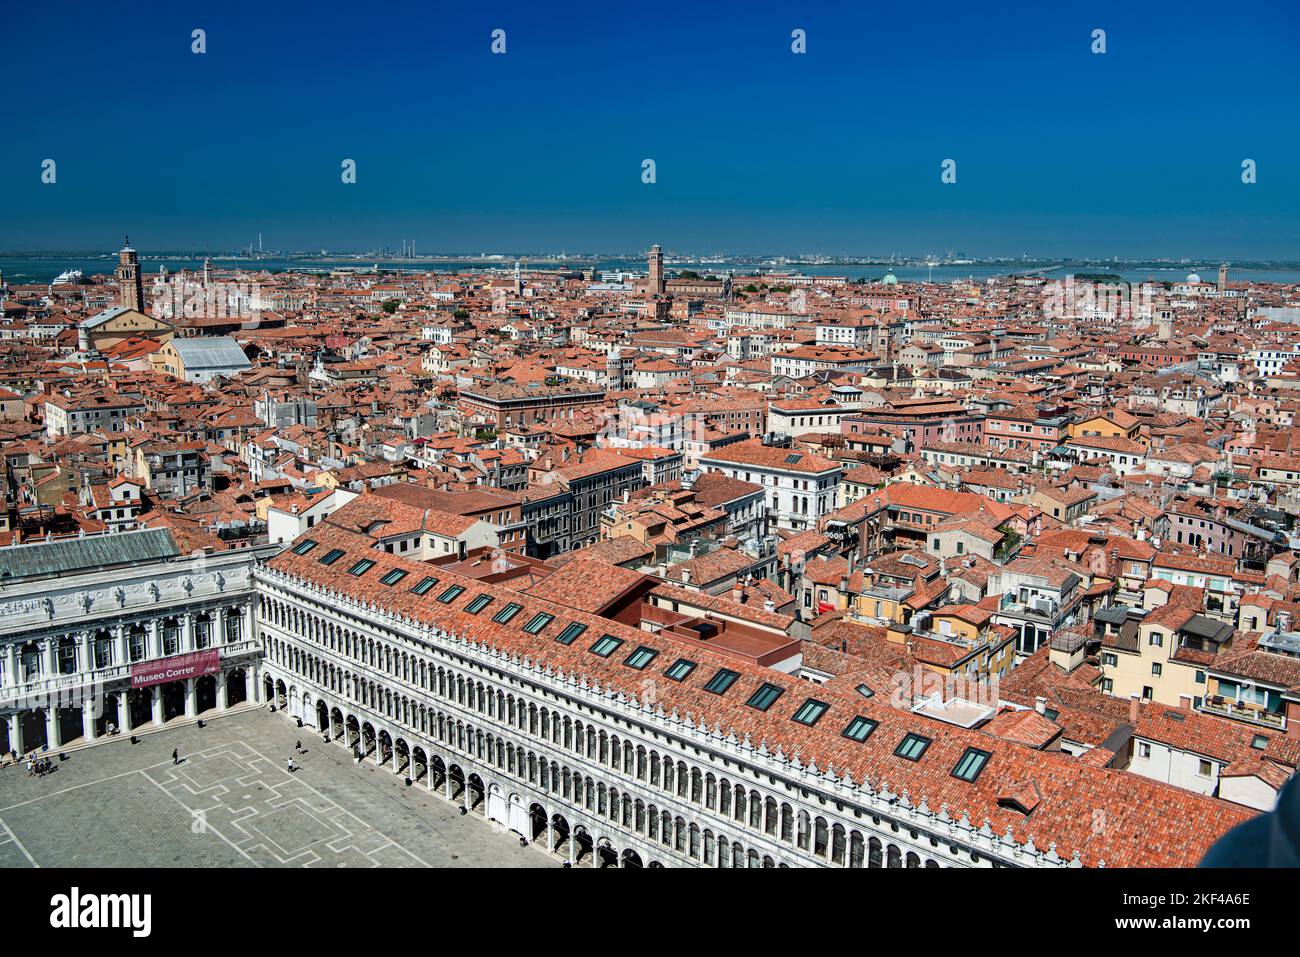 Blick vom Campanile, Glockentrum von San Marco in Richtung Stadtteil San Marco, Markusplatz, Venedig, Venetien, Italien Stock Photo